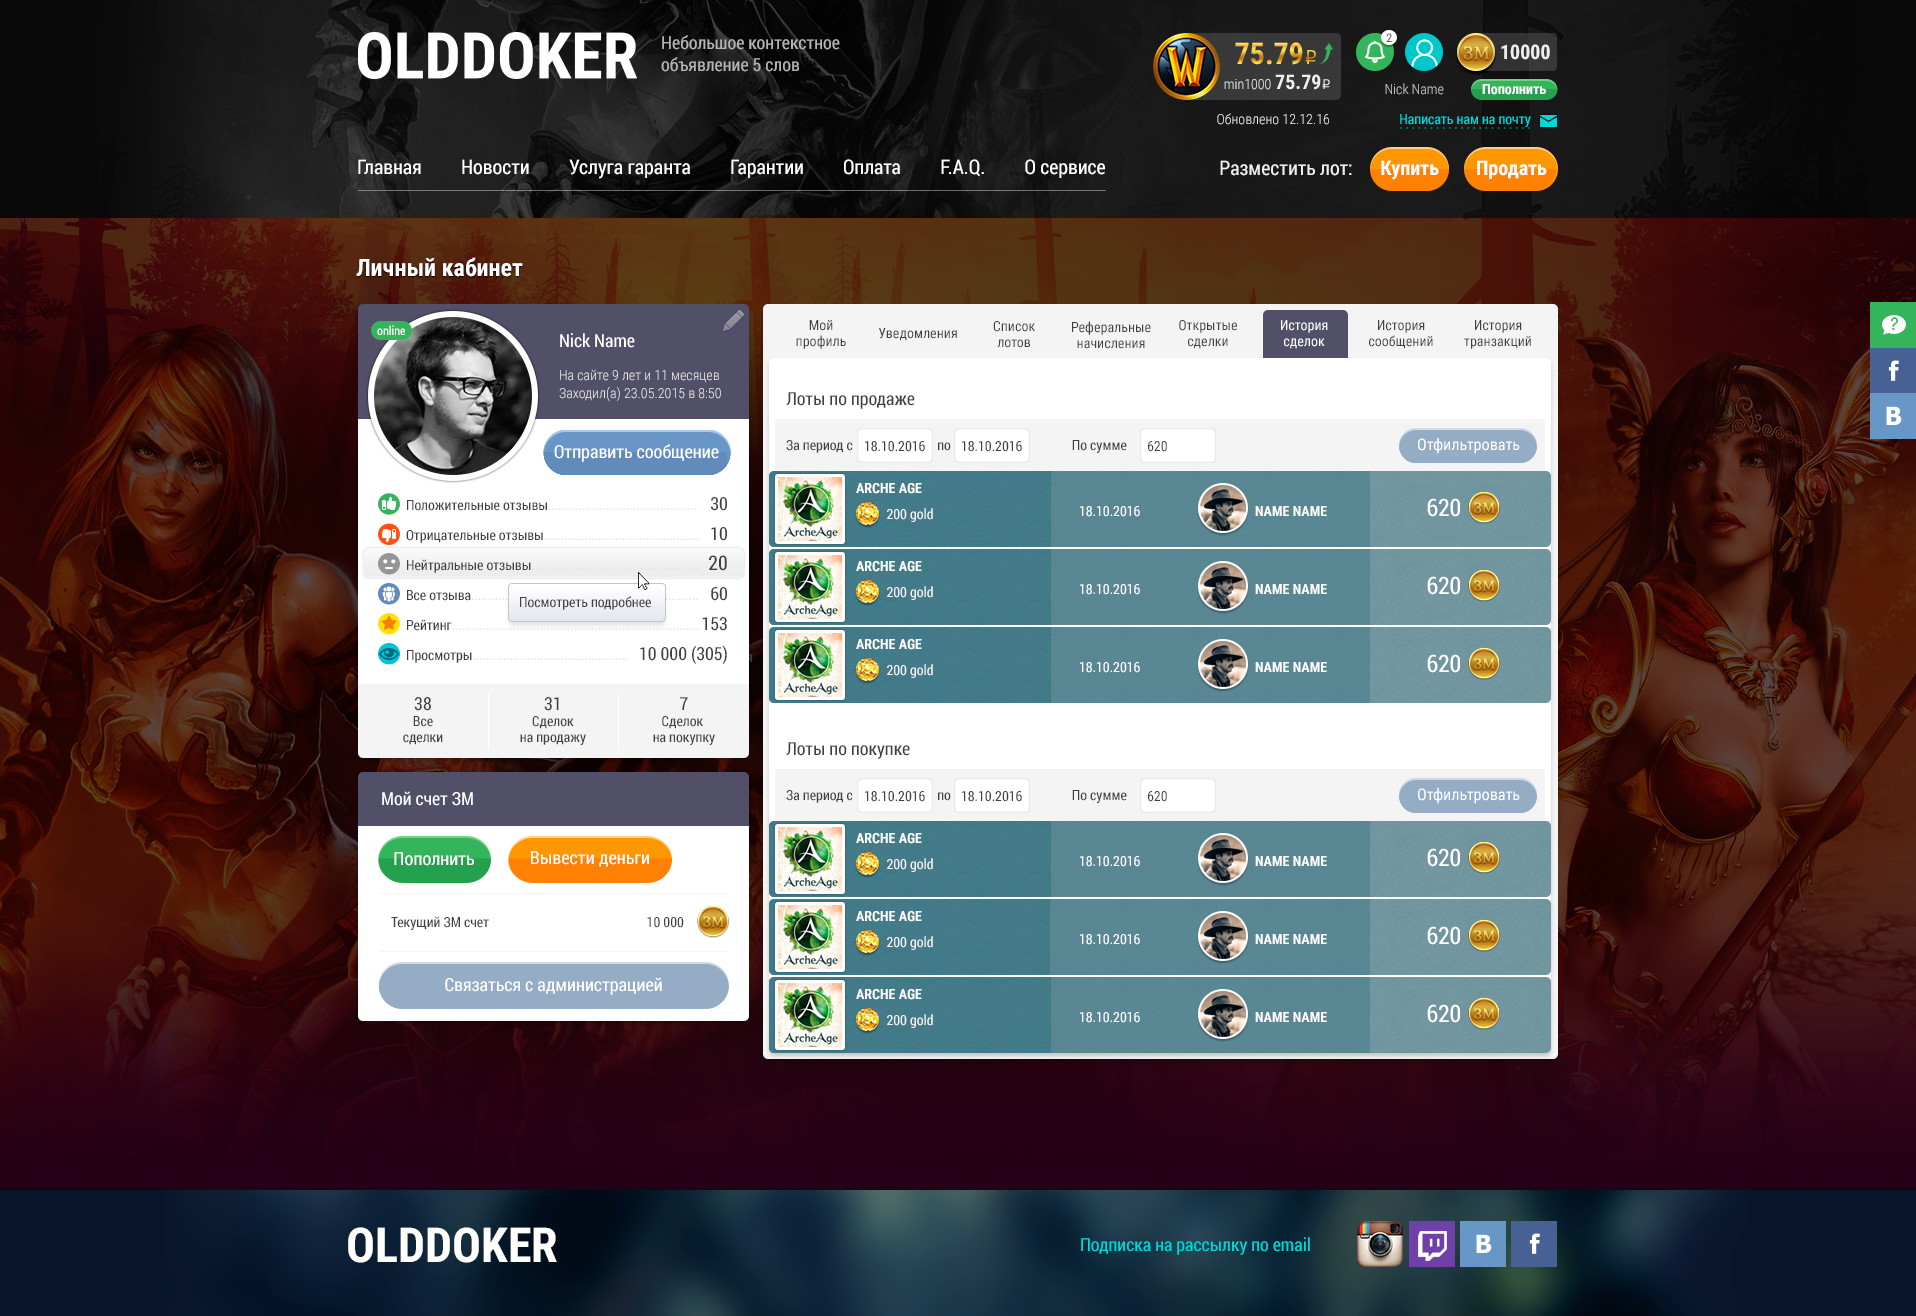 сайт для биржи игровых ценностей olddoker с элементами социальной сети